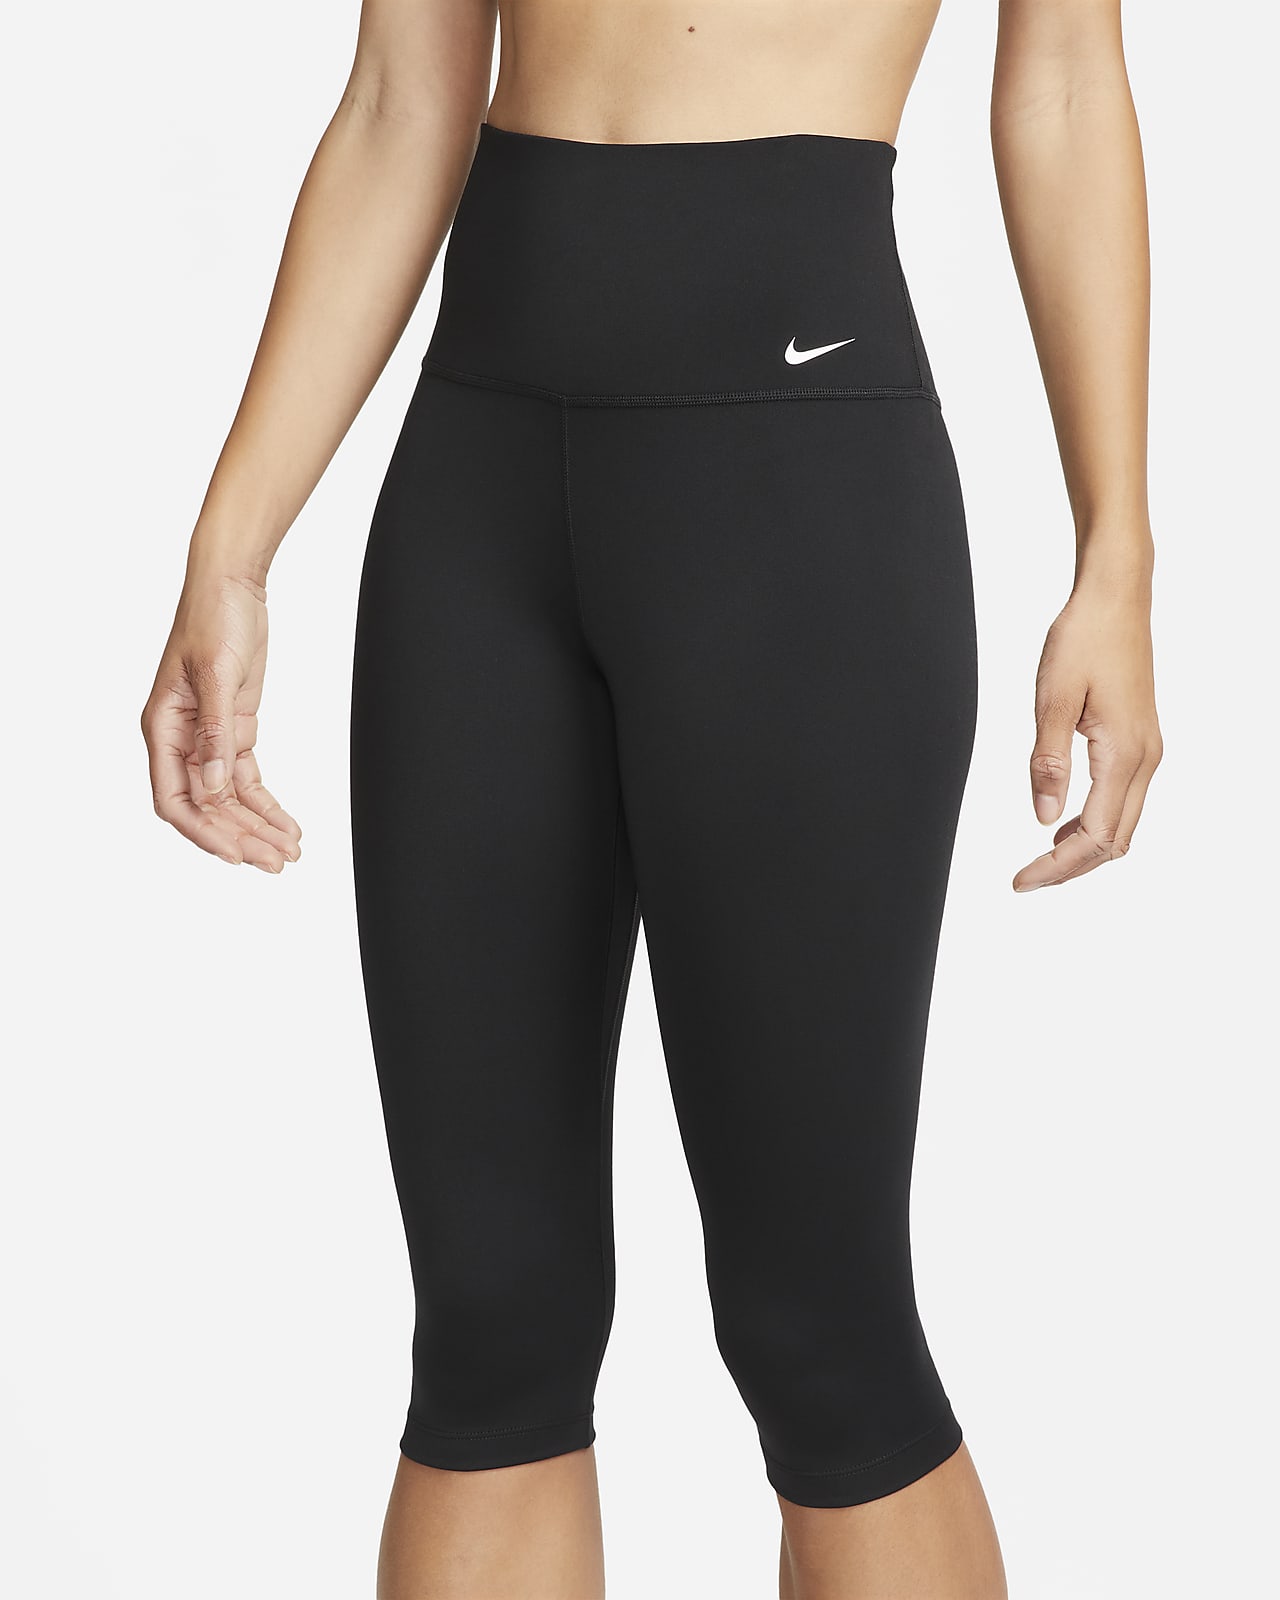 Nike One Women's High-Waisted Capri Leggings. Nike CH